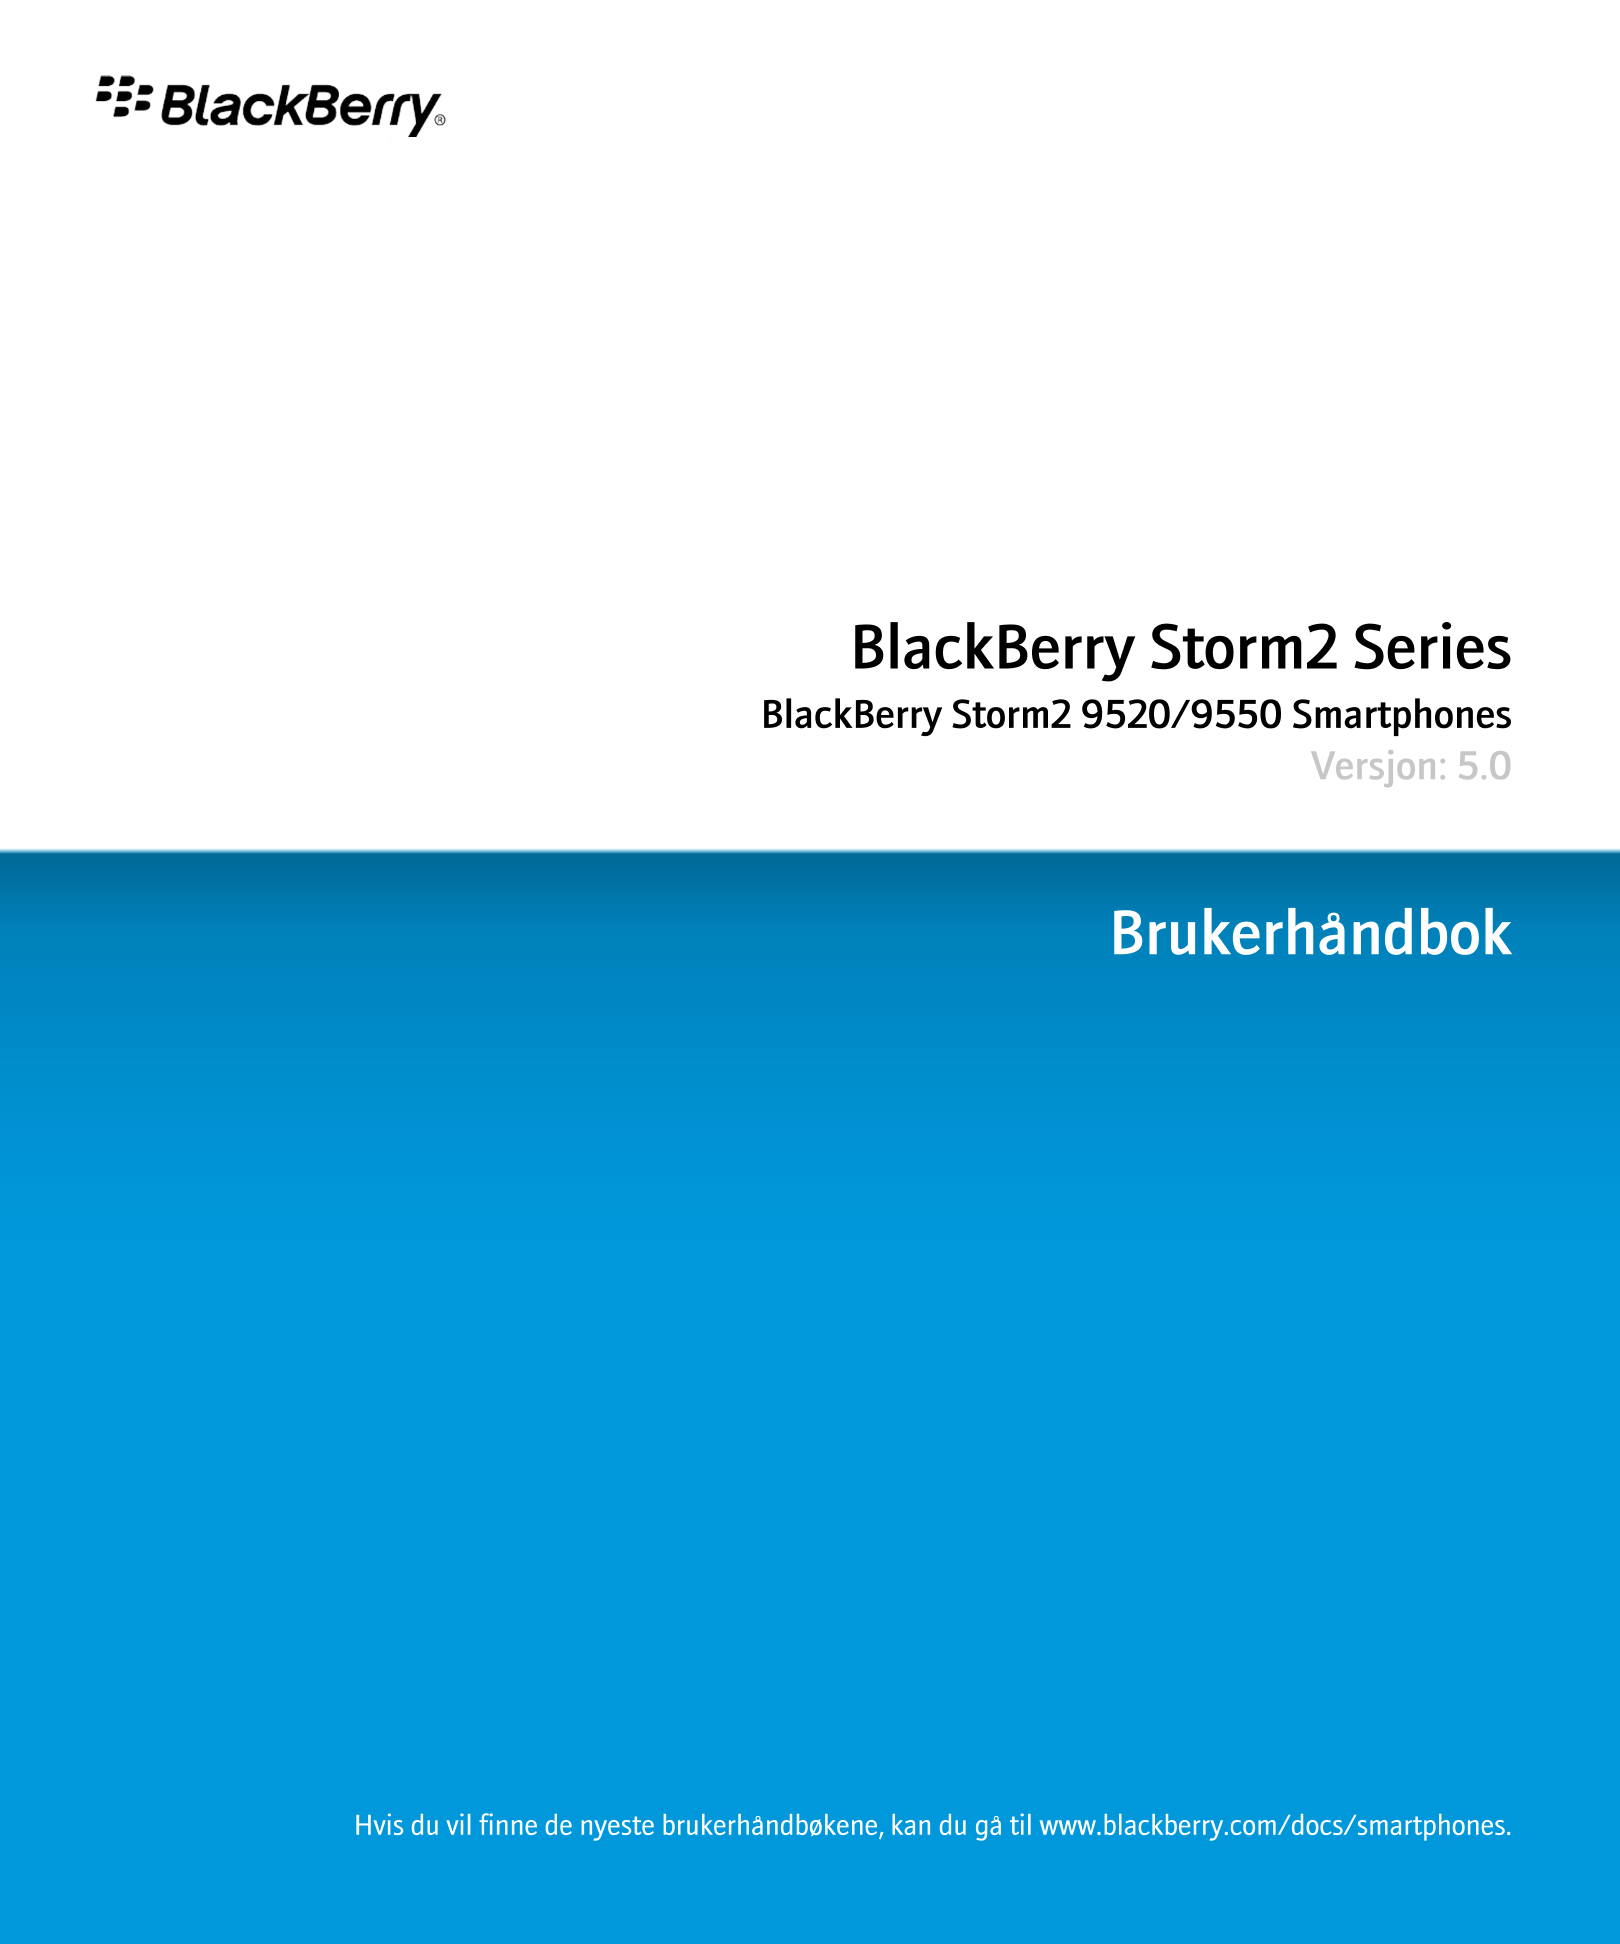 BlackBerry Storm2 Series
BlackBerry Storm2 9520/9550 Smartphones
Versjon: 5.0
Brukerhåndbok
Hvis du vil finne de nyeste brukerhå